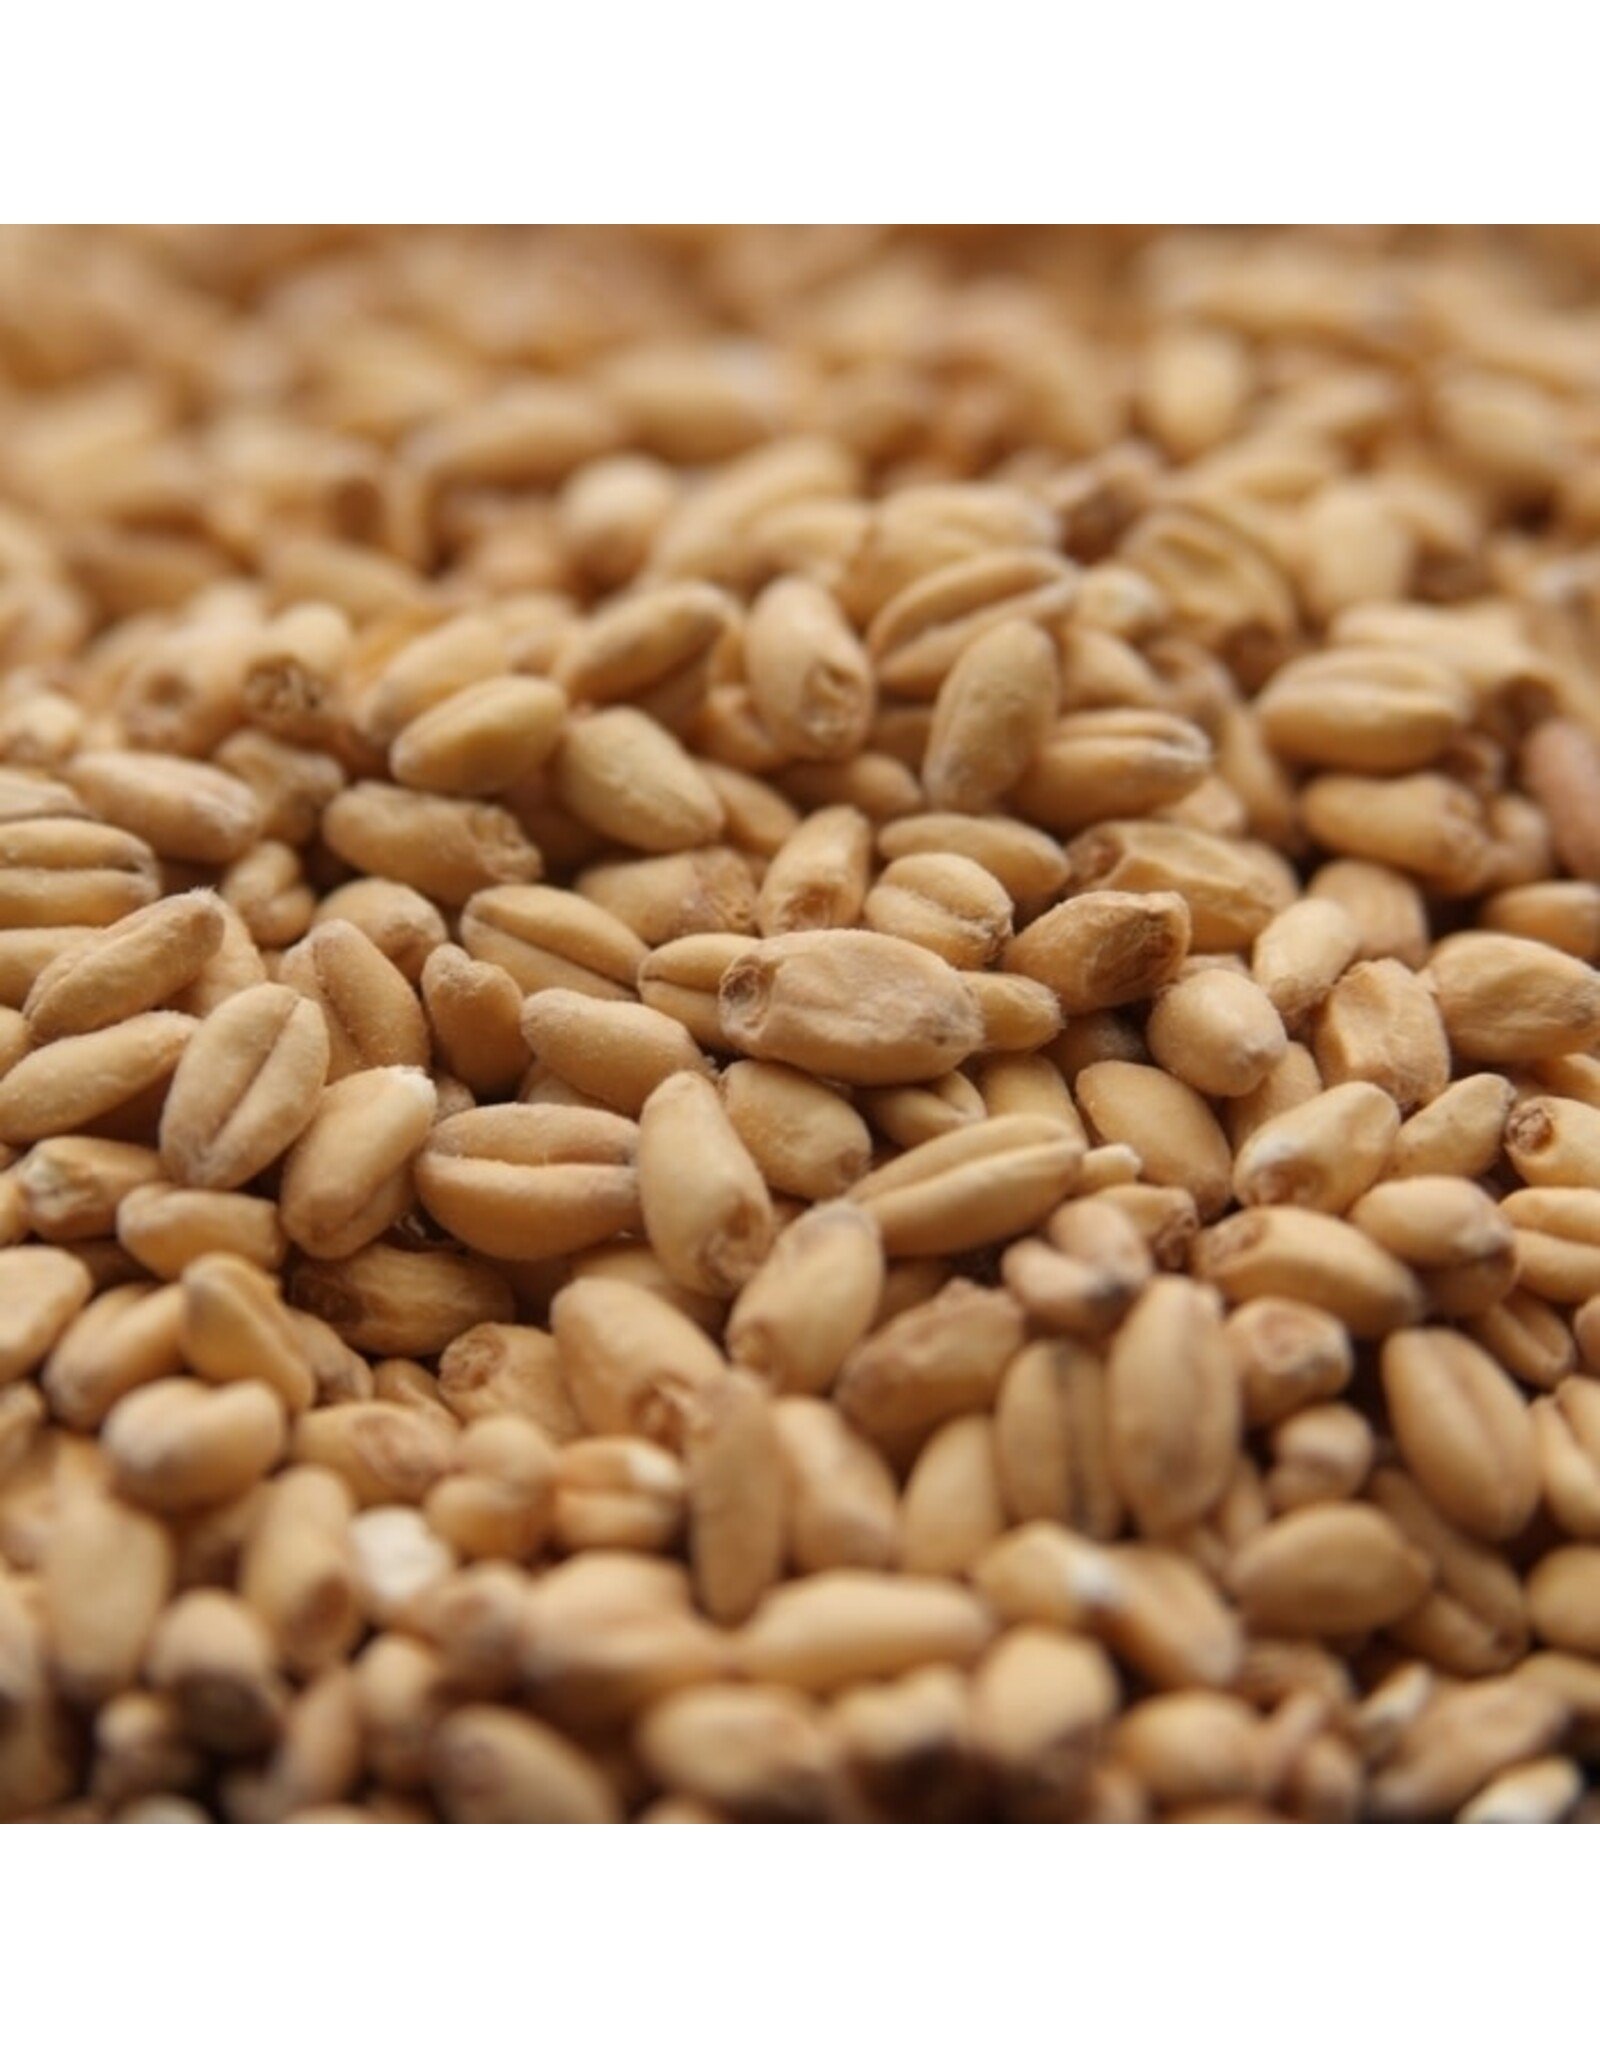 Rahr Rahr White Wheat Malt 2.7-3.5 L 1 oz